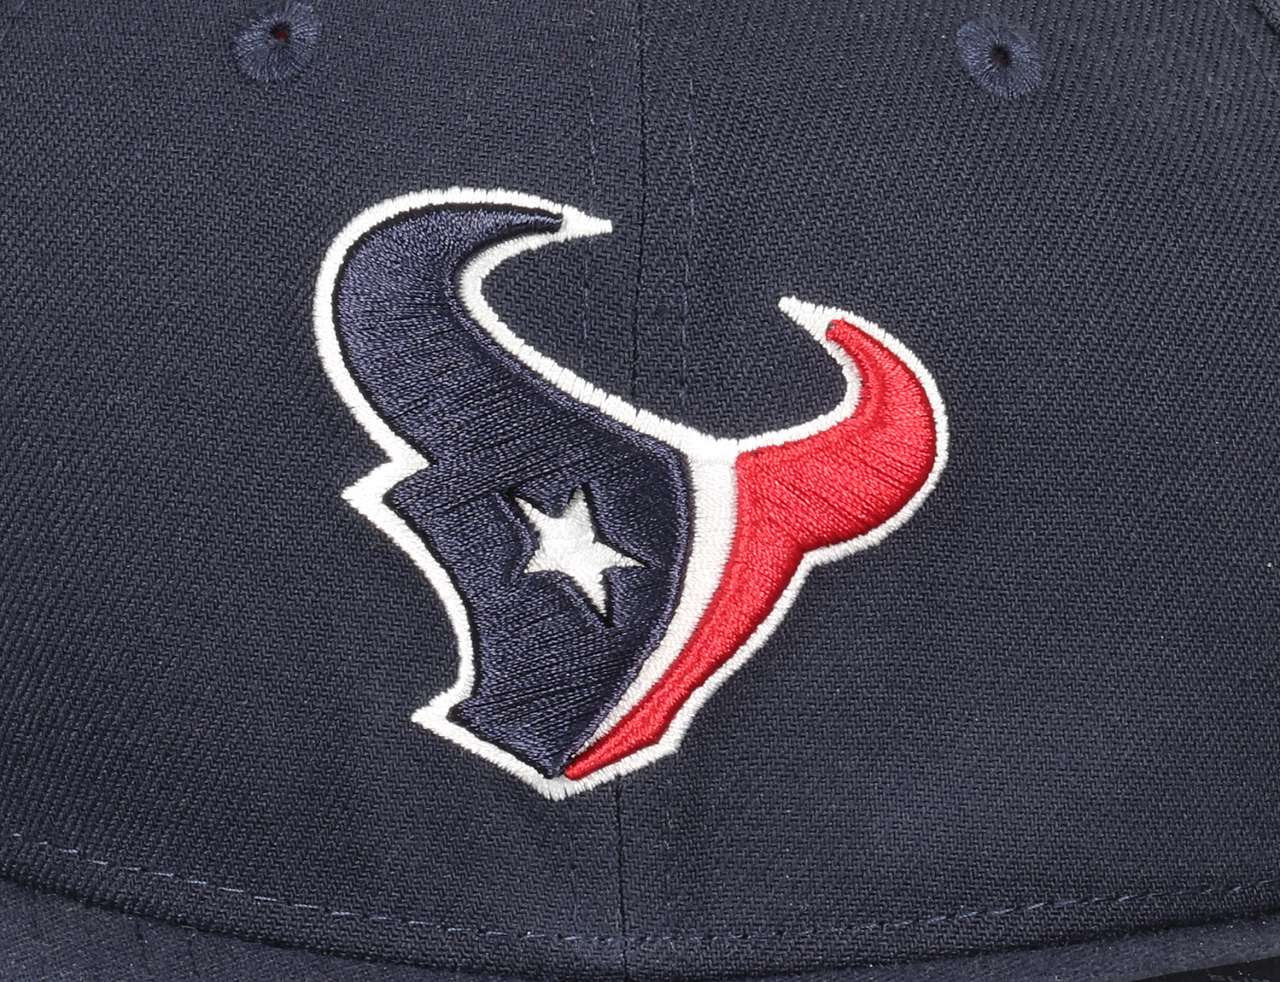 Houston Texans NFL Navy 9Fifty Original Fit Snapback Cap New Era